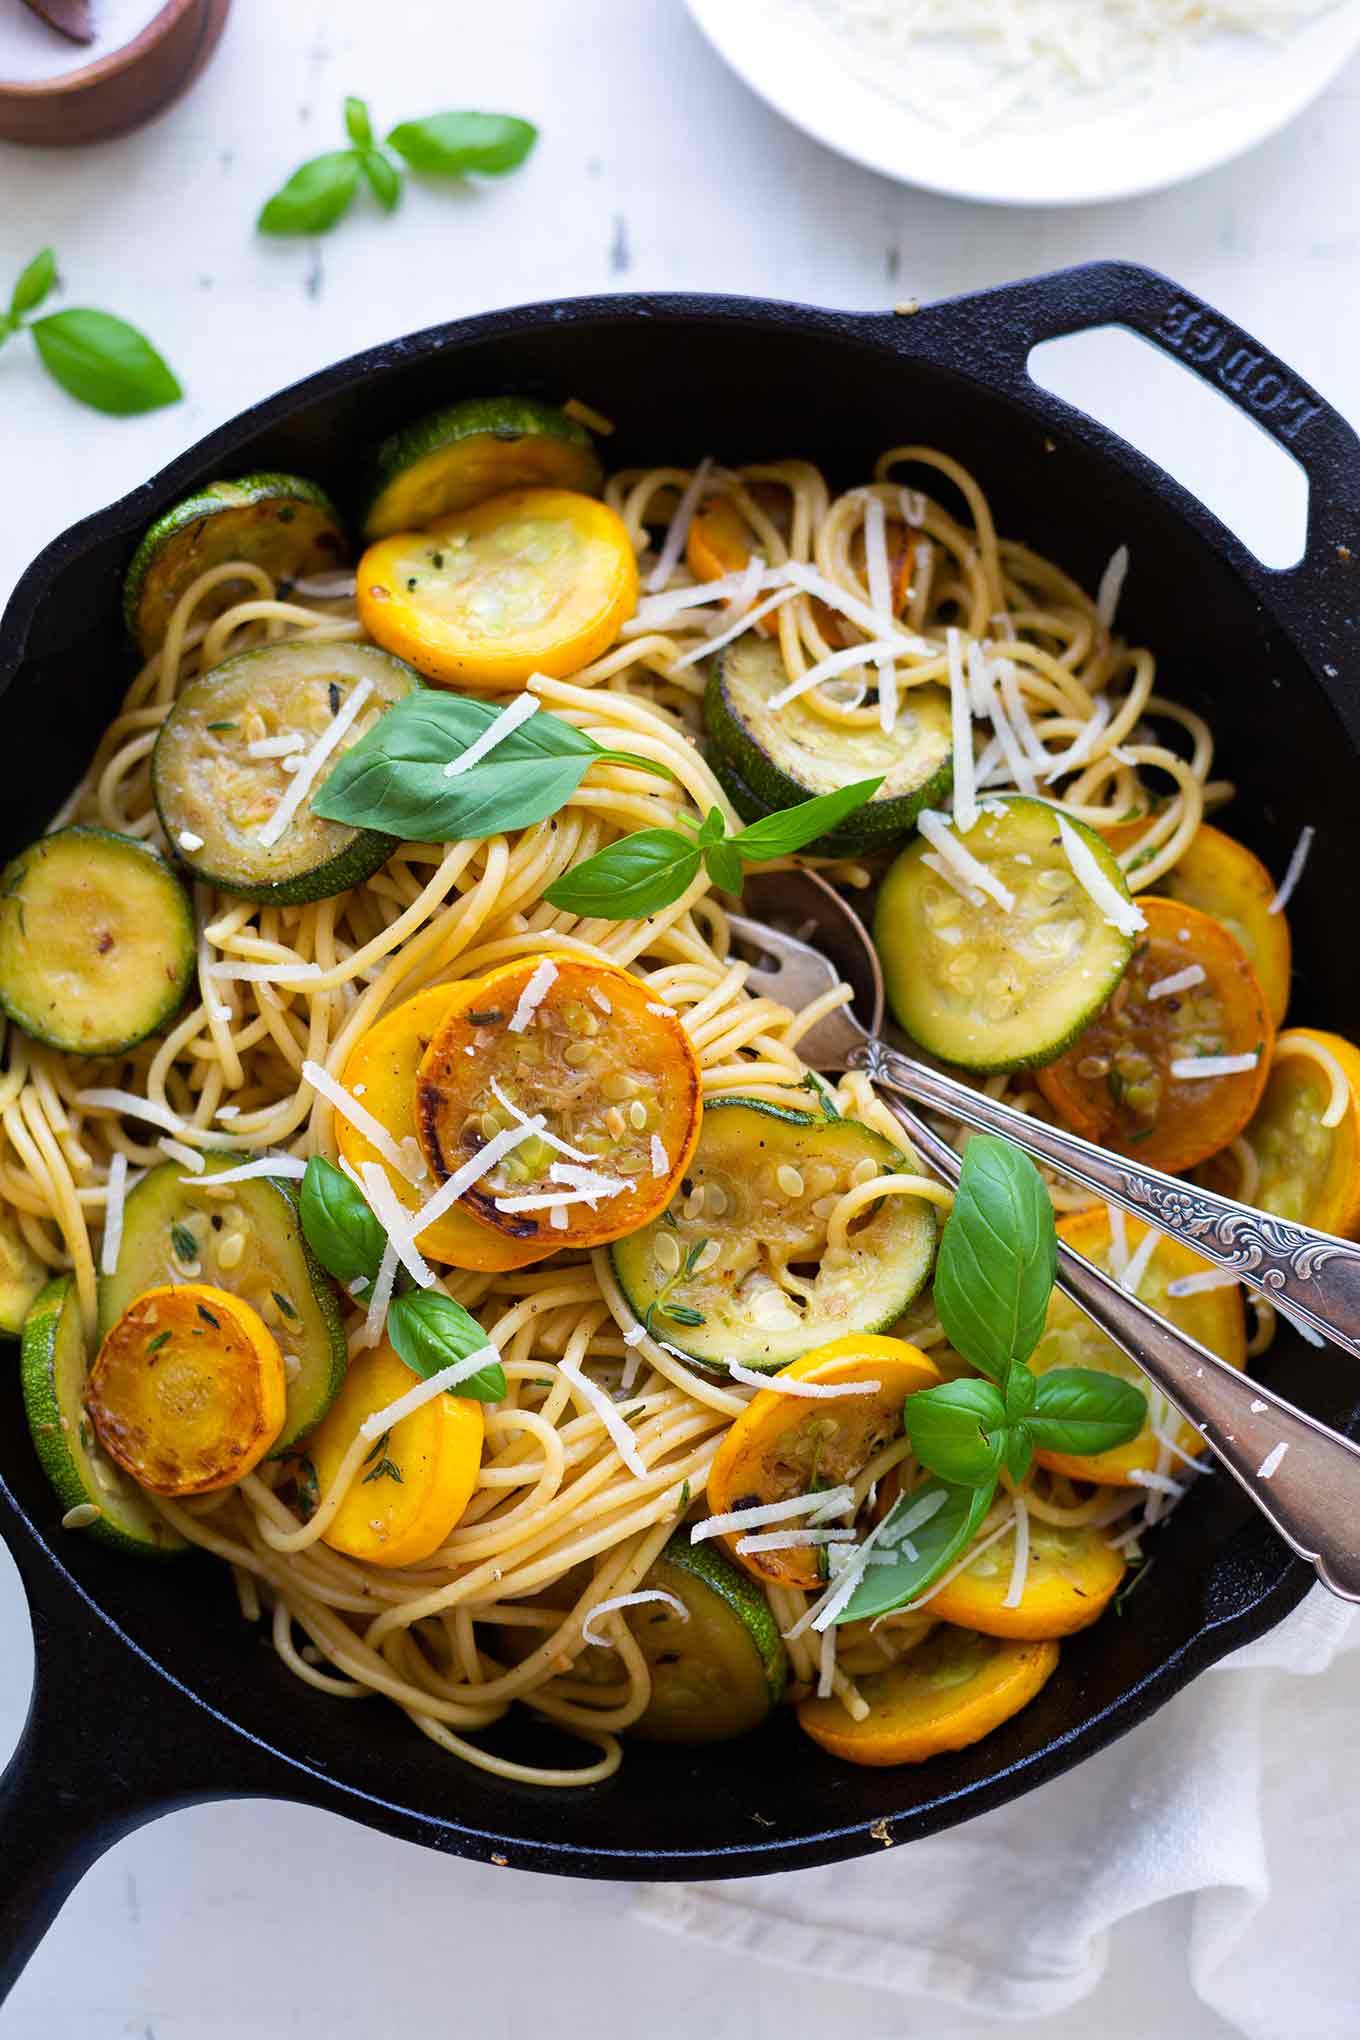 Schnelle Spaghetti mit Zucchini-Weißwein-Sauce. Dieses einfache 20-Minuten Rezept ist perfekt für den Sommer, super lecker und vegetarisch! - Kochkarussell.com #zucchini #spaghetti #pasta #sommer #kochkarussell